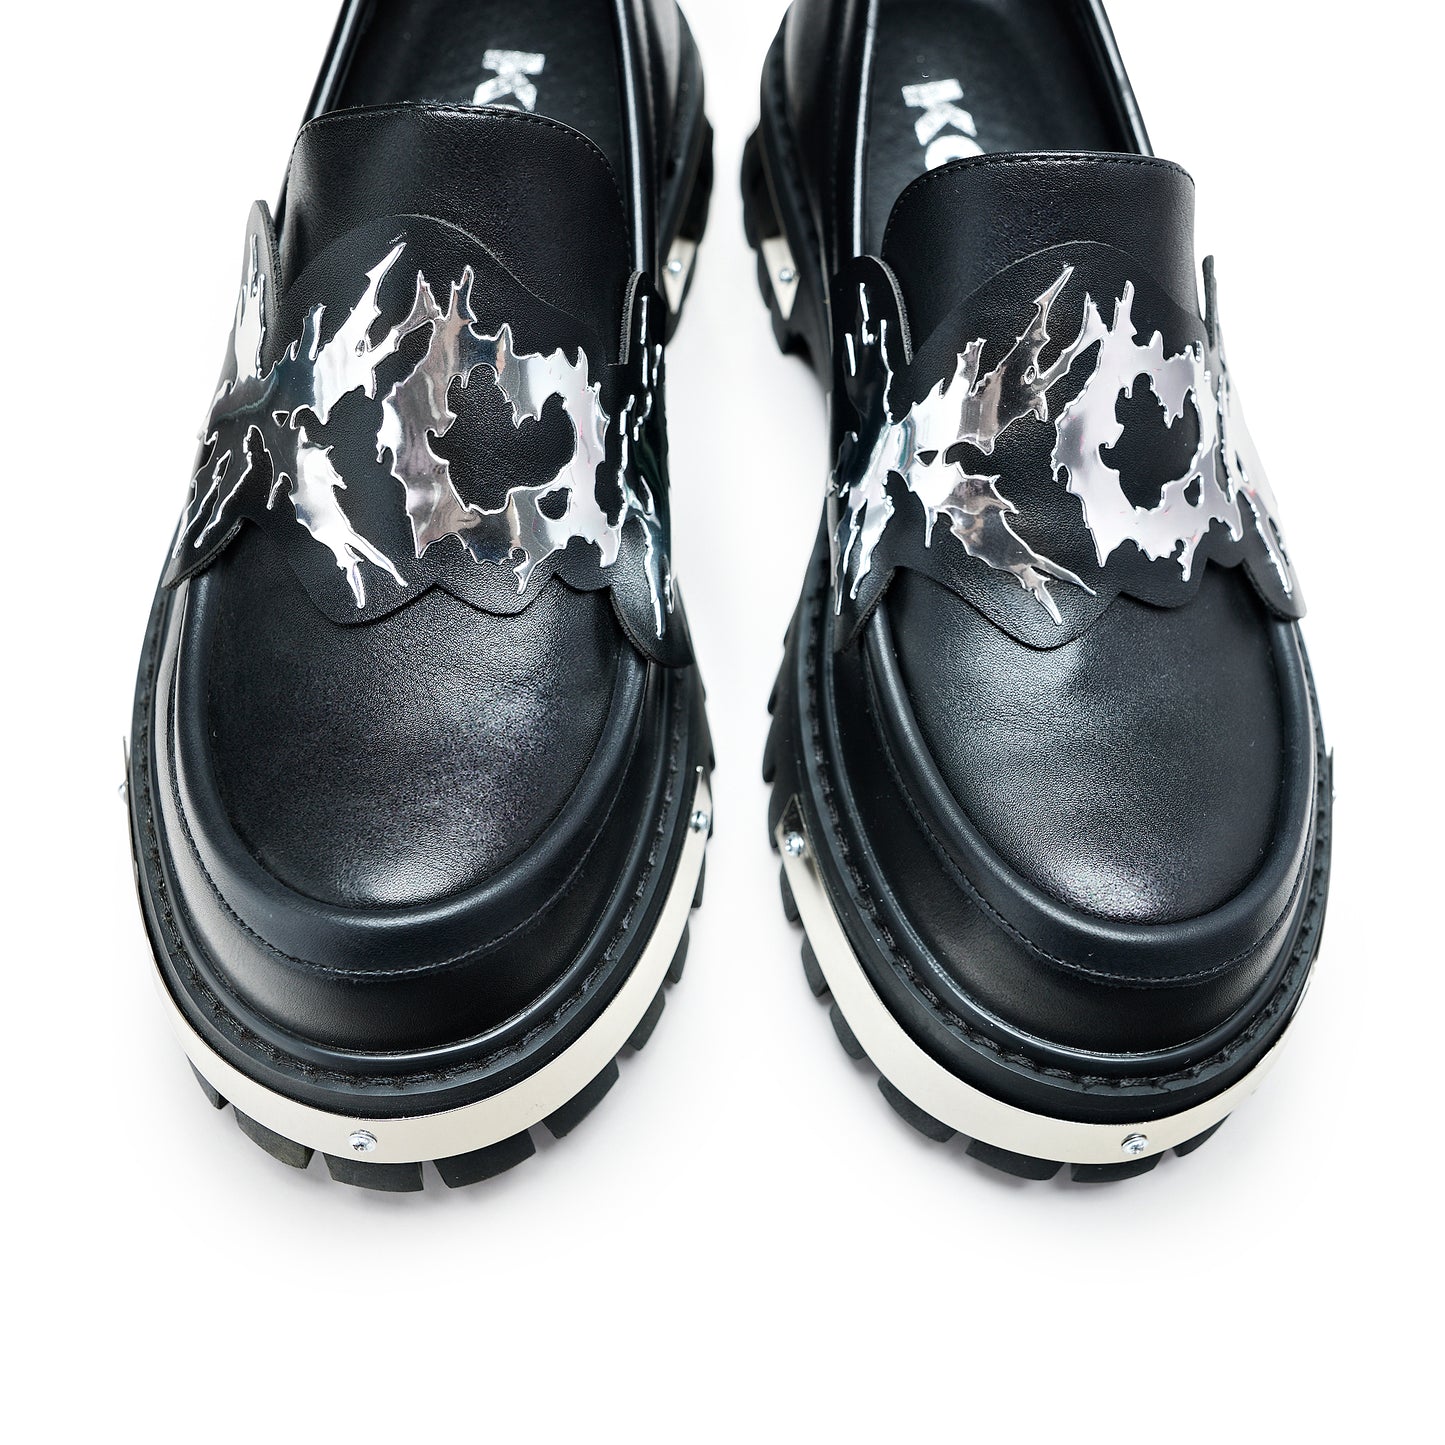 My Metal Loafers - Black - Shoes - KOI Footwear - Black - Top View